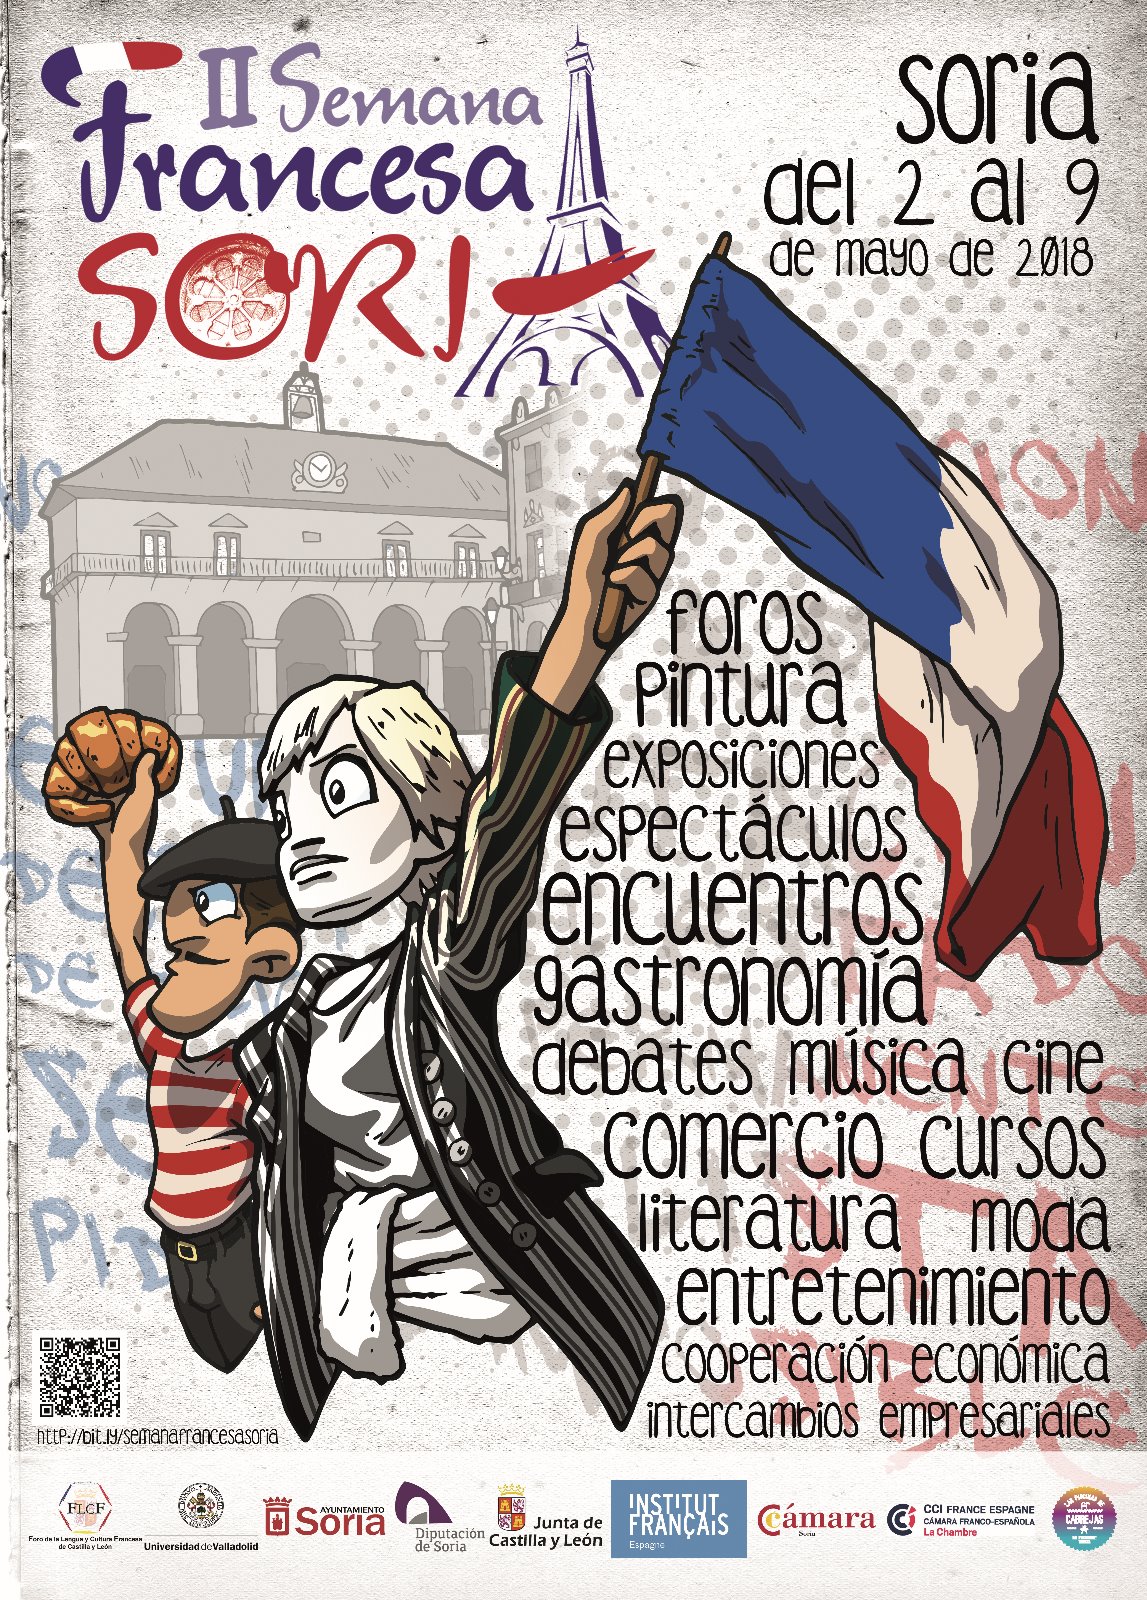  II Semana Francesa en Soria